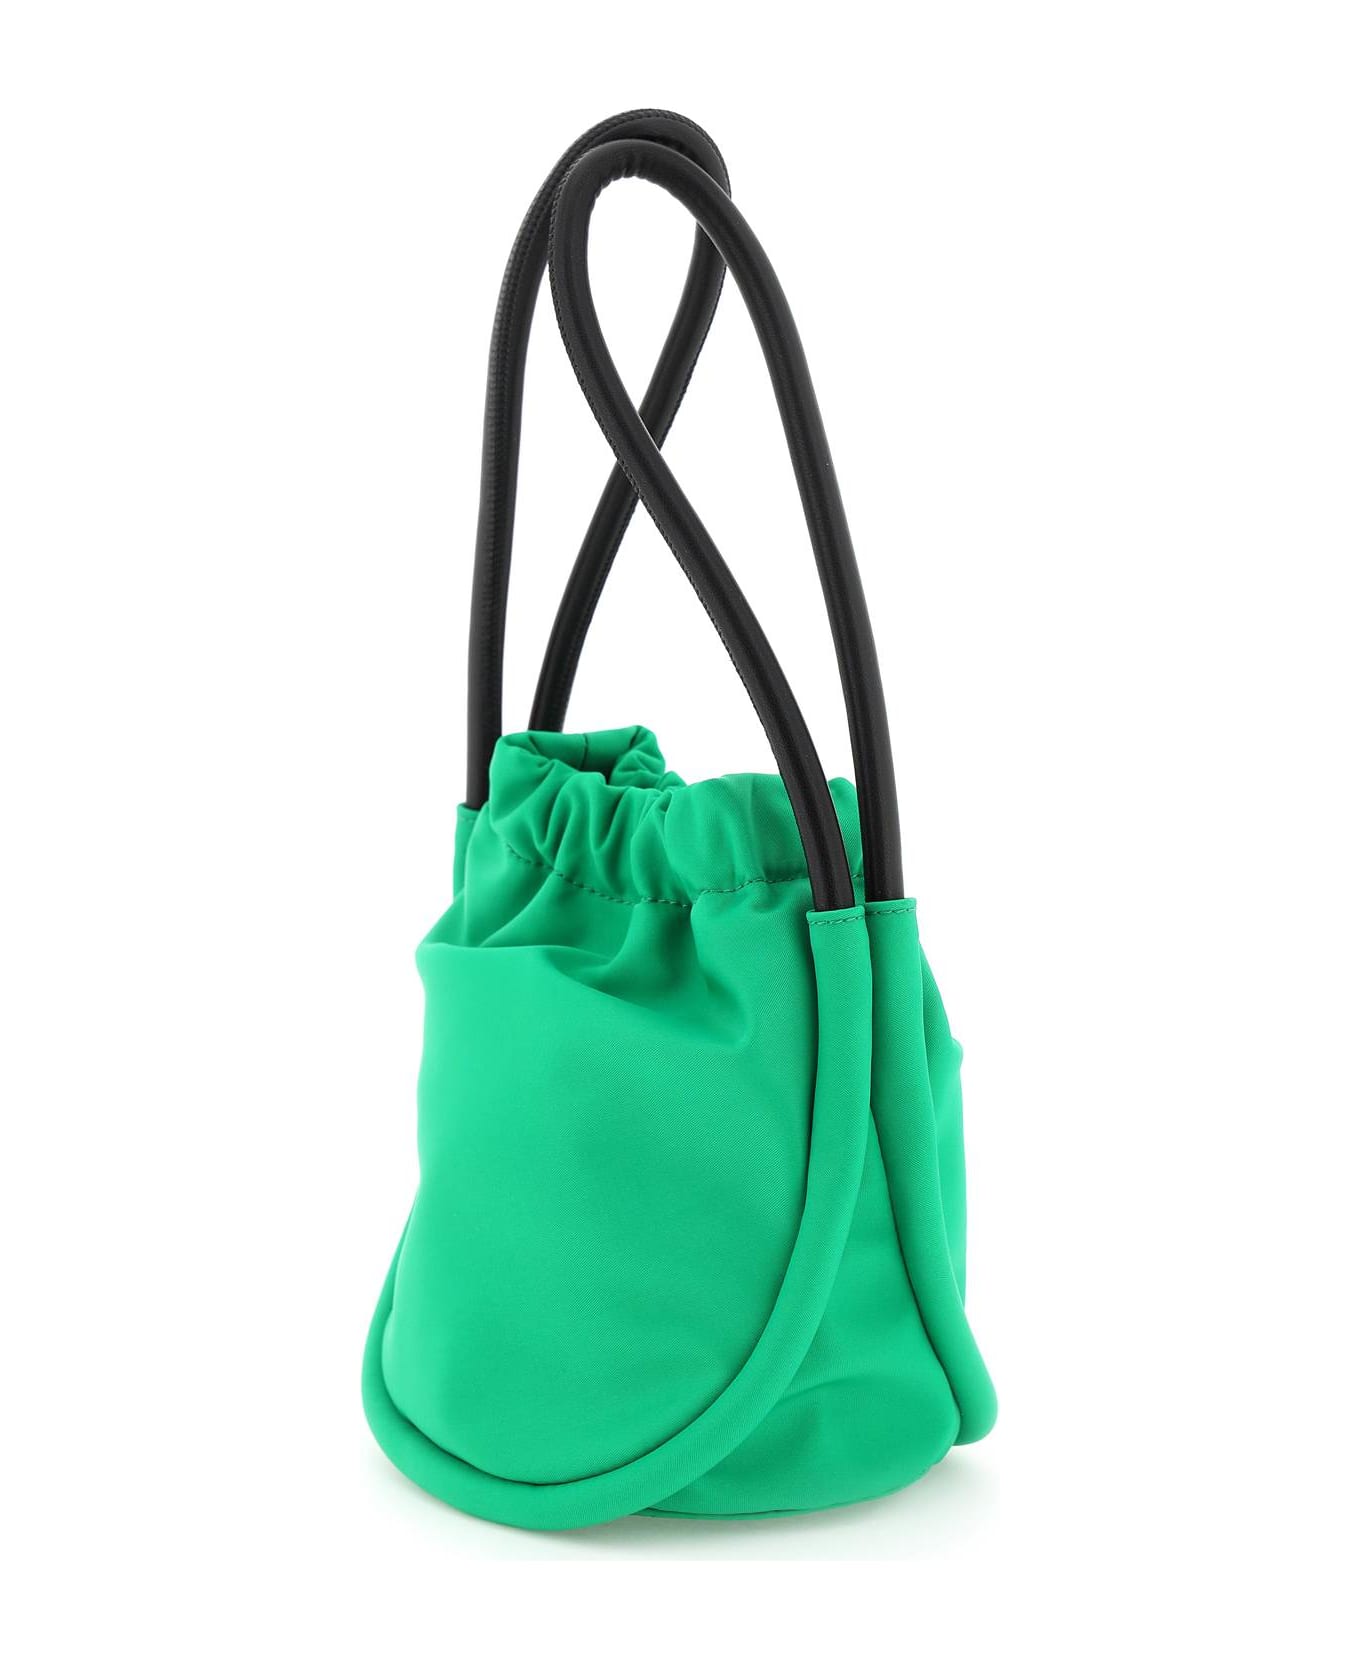 Ganni 'knot'mini Bag - KELLY GREEN (Green)